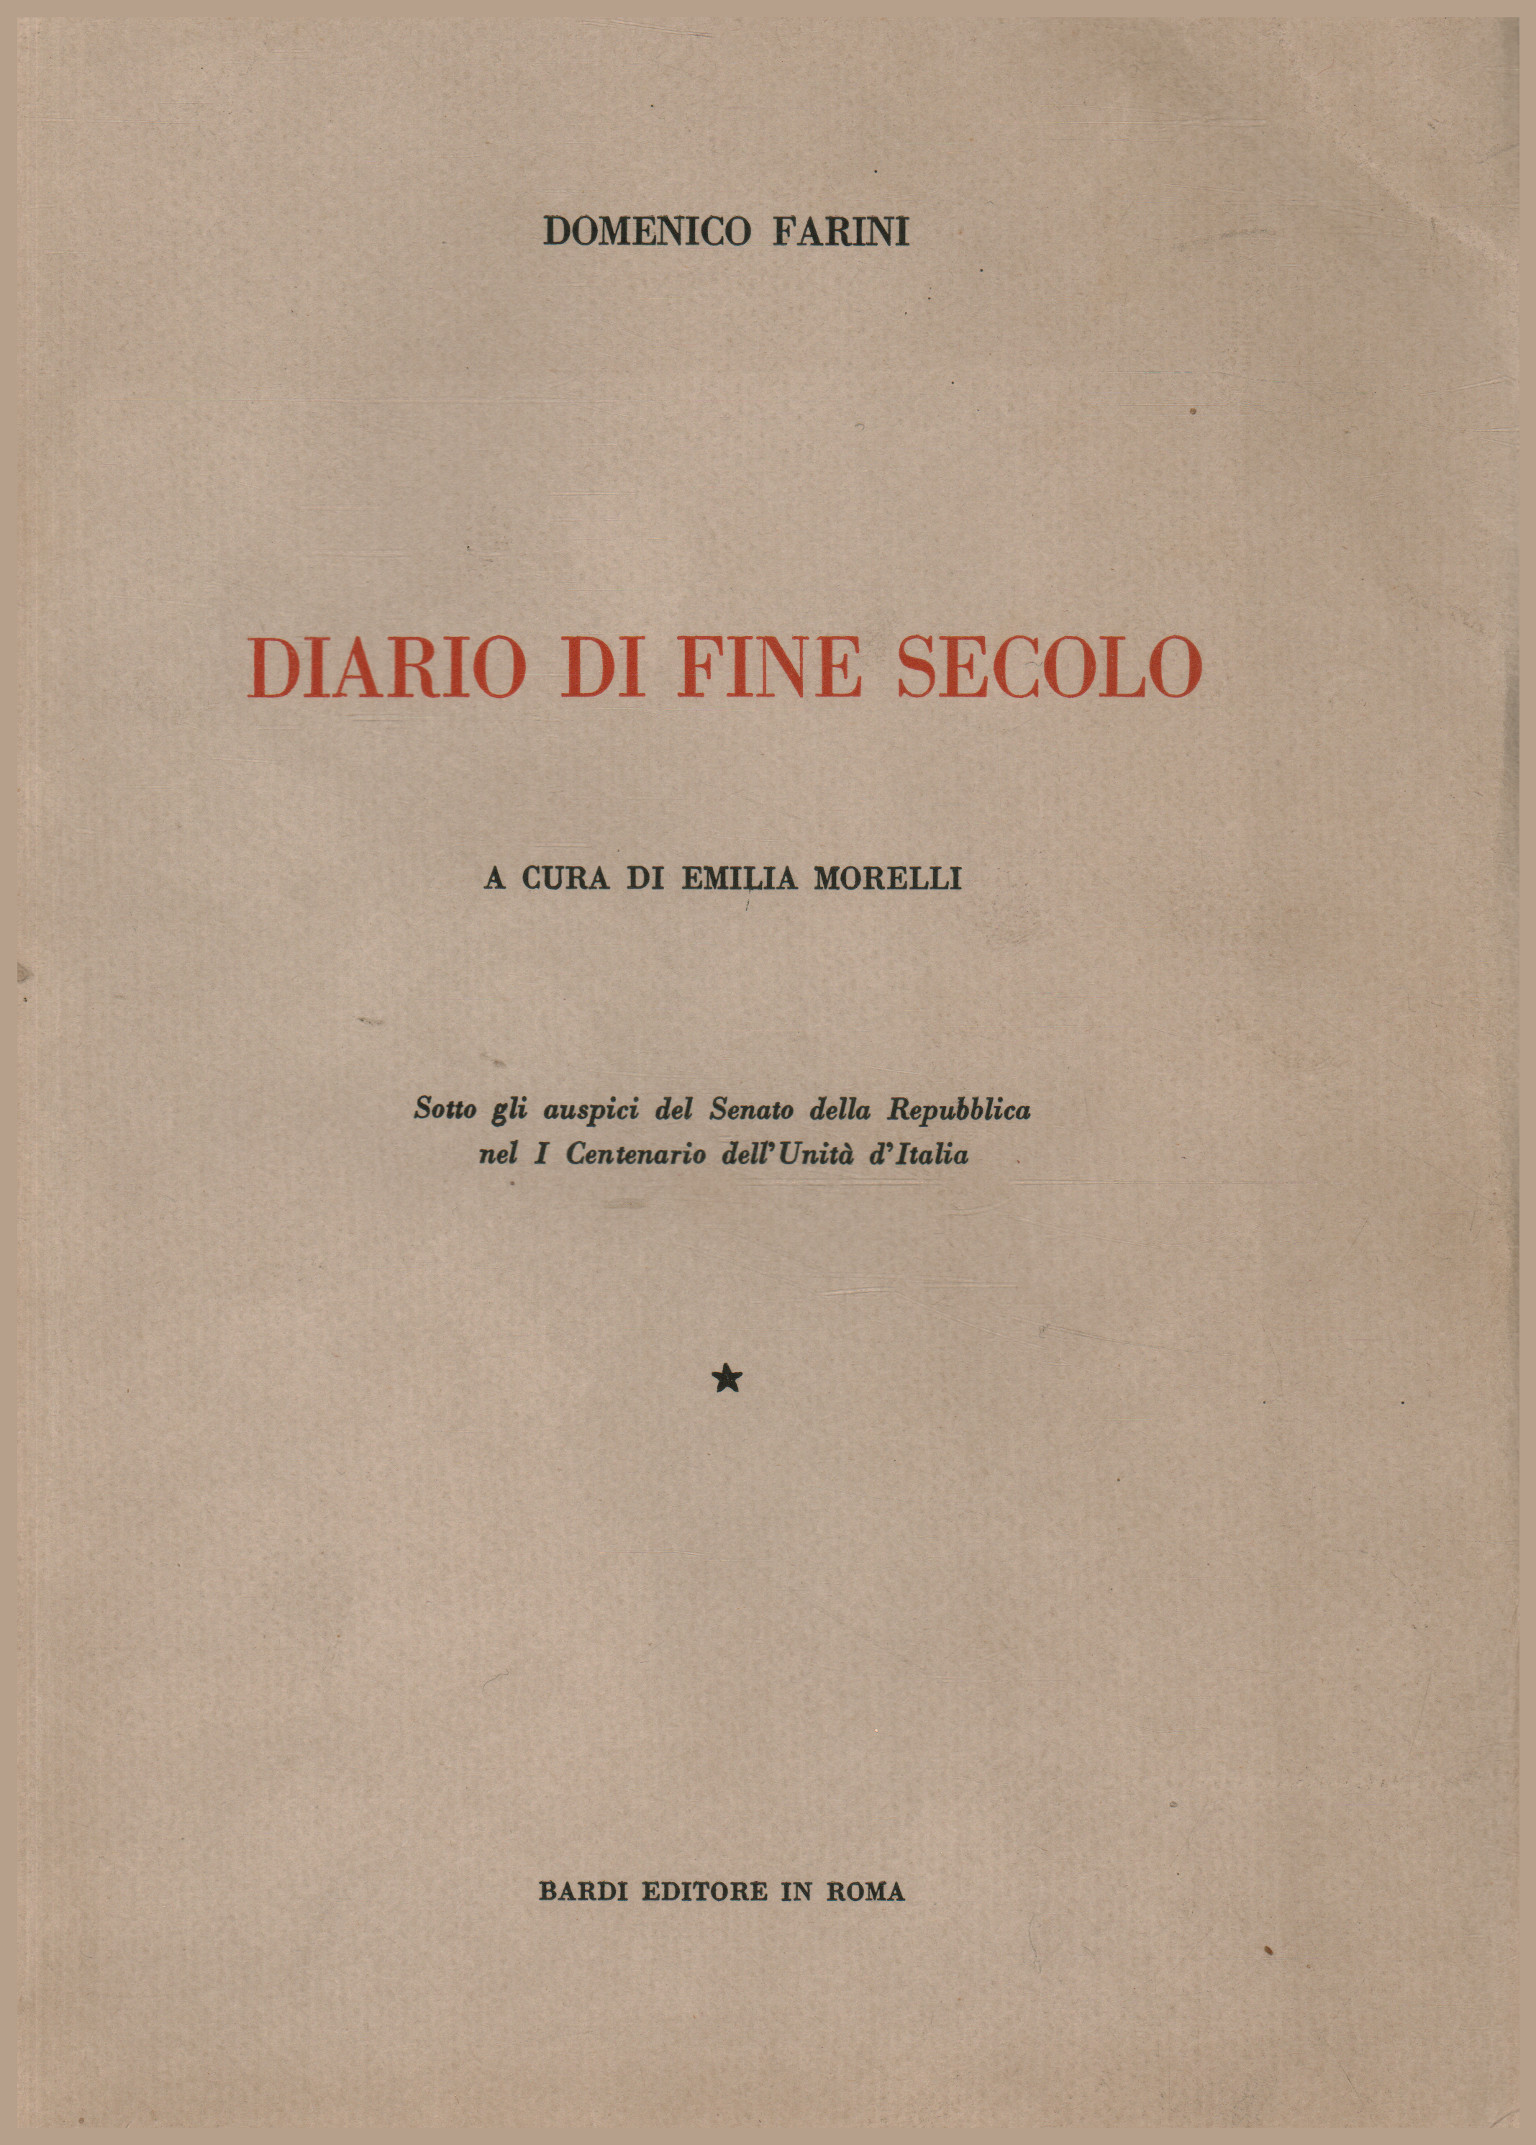 Diario de fin de siglo, Domenico Farini